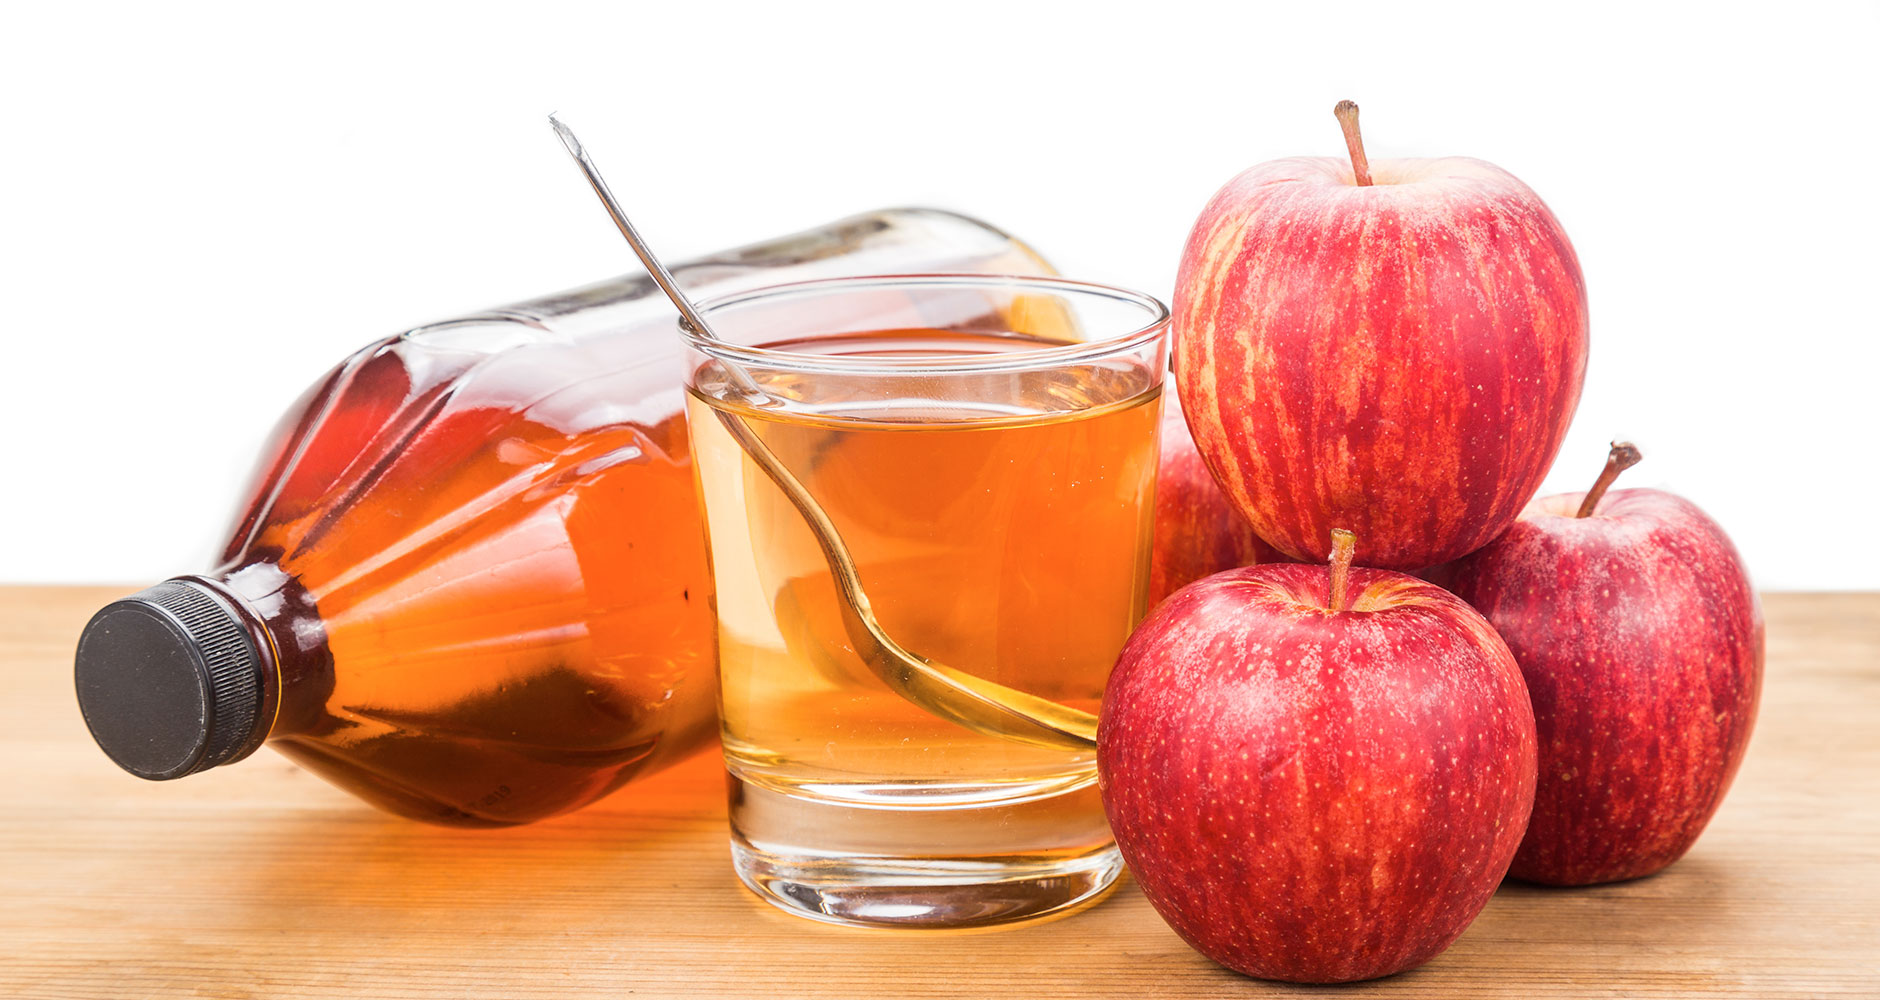 to thicken-apple cider vinegar dressing